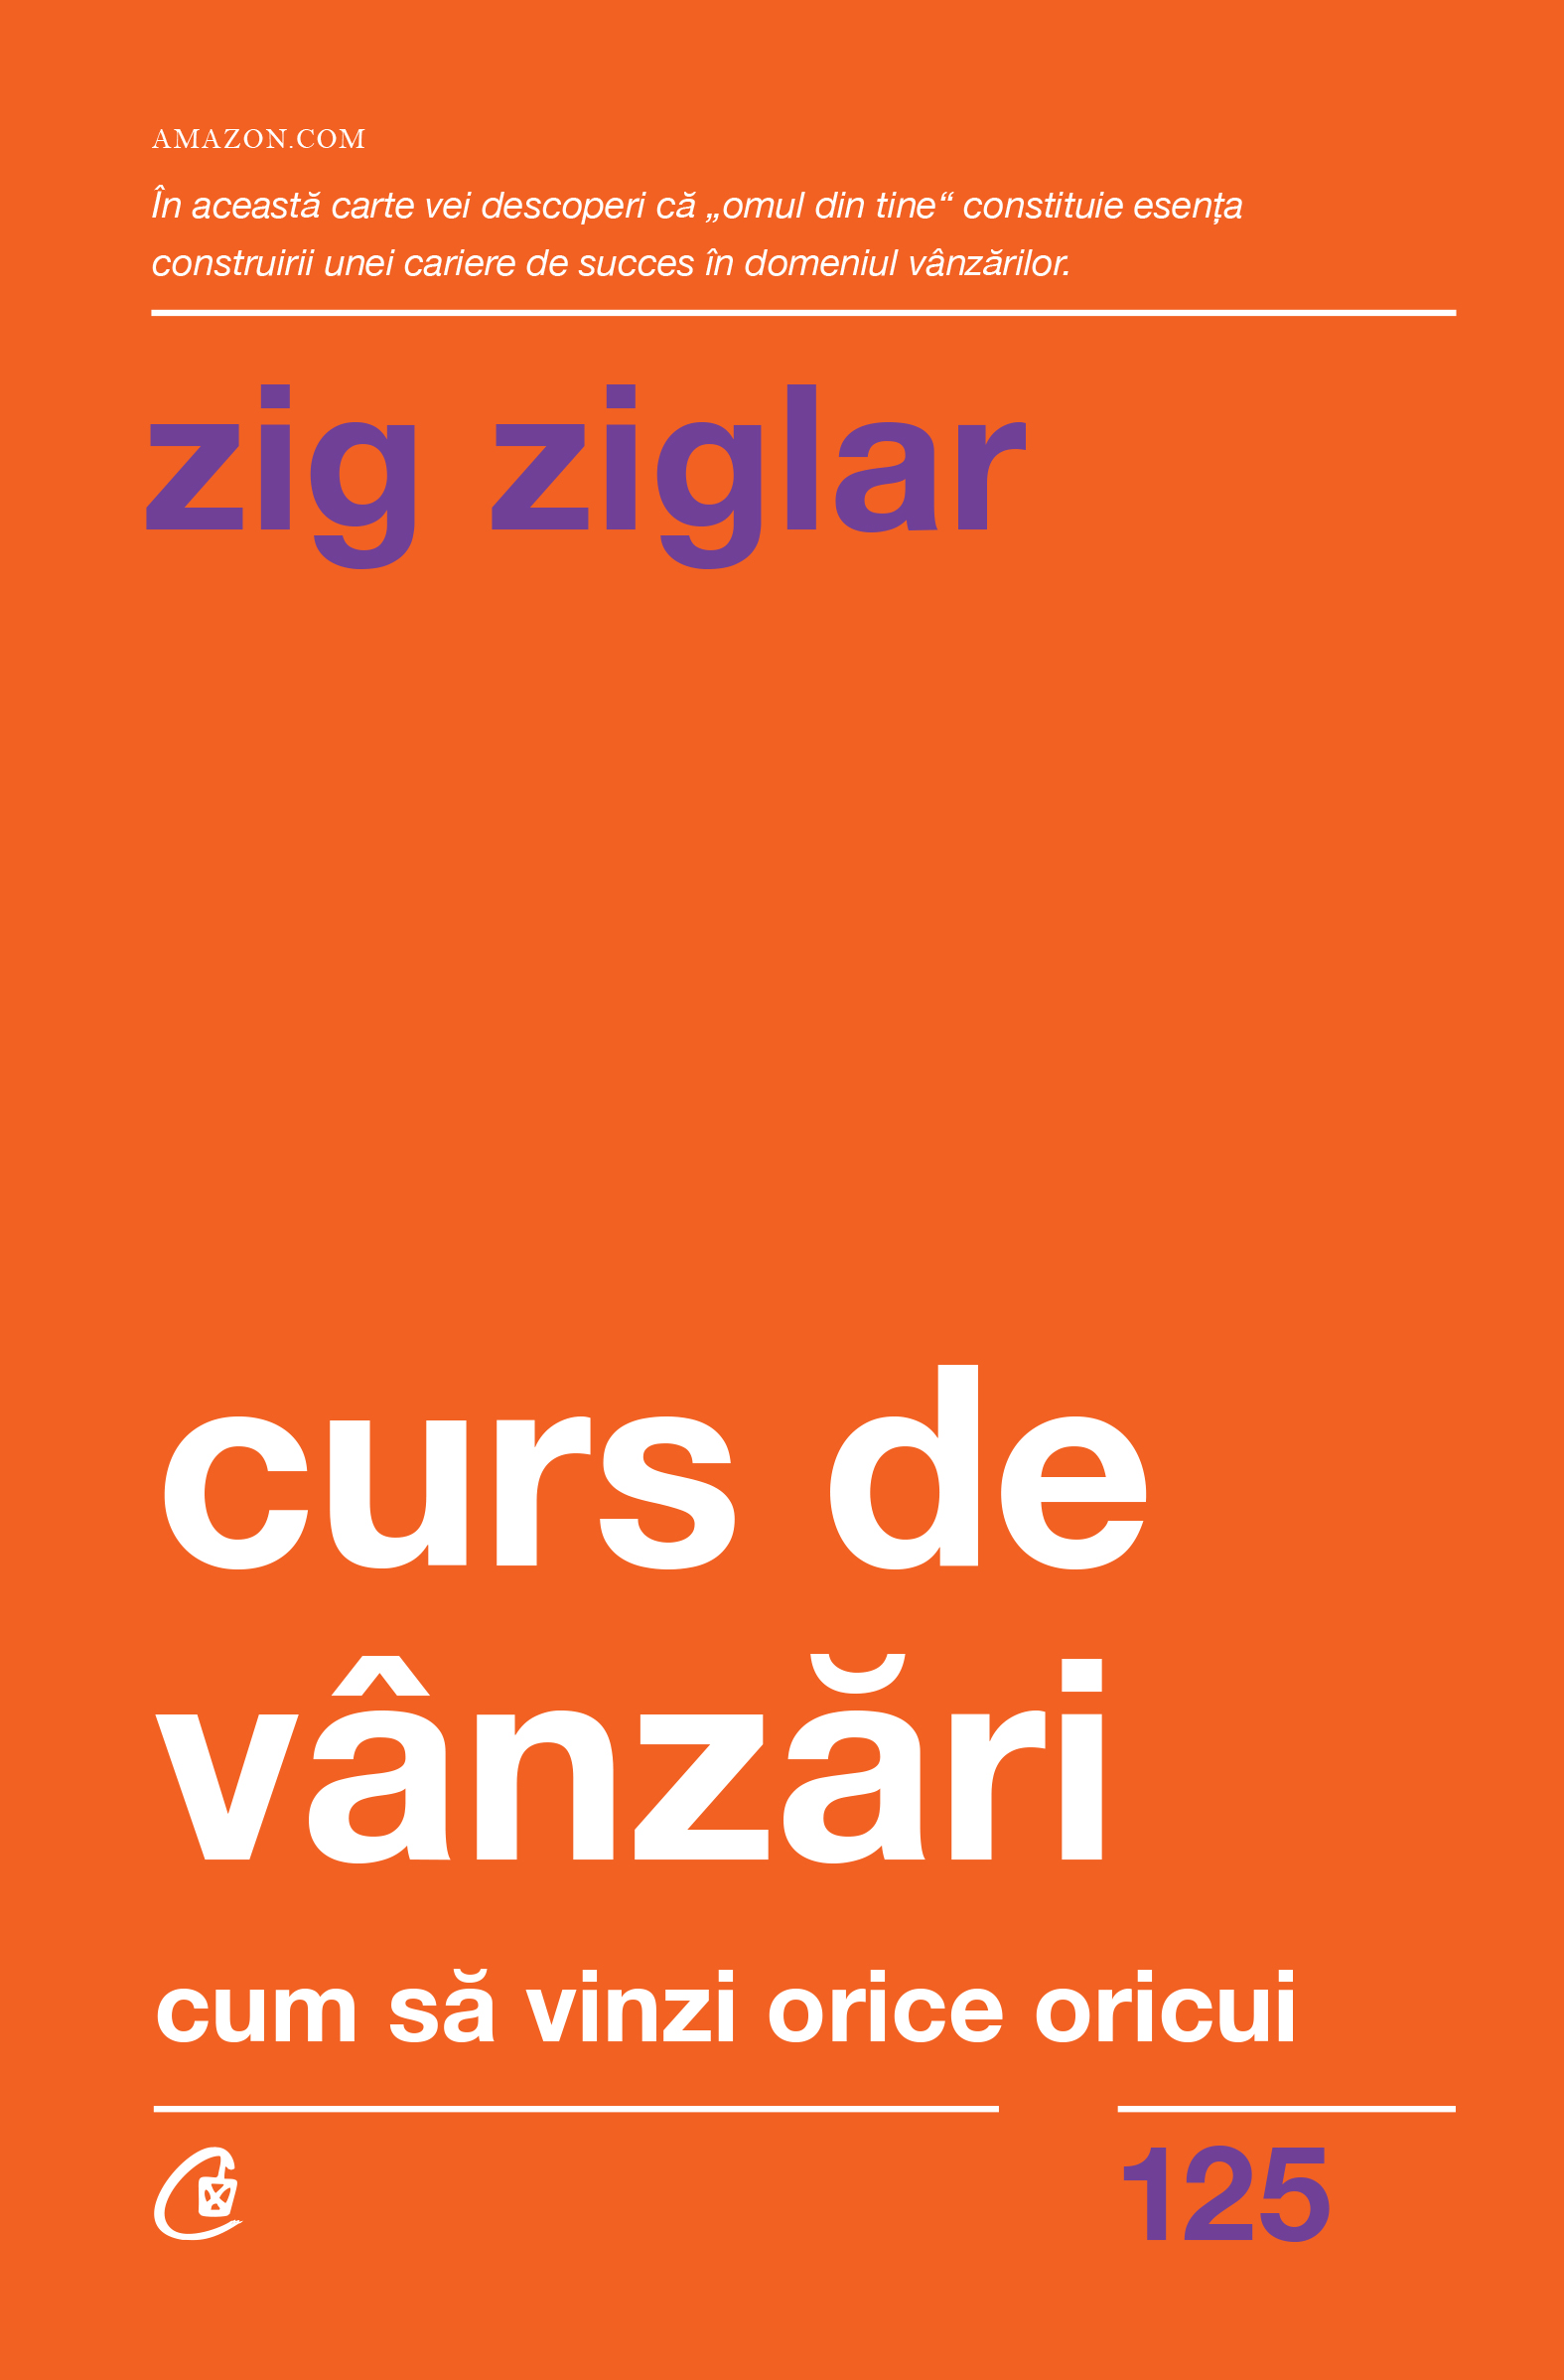 Curs de vanzari | Zig Ziglar Business